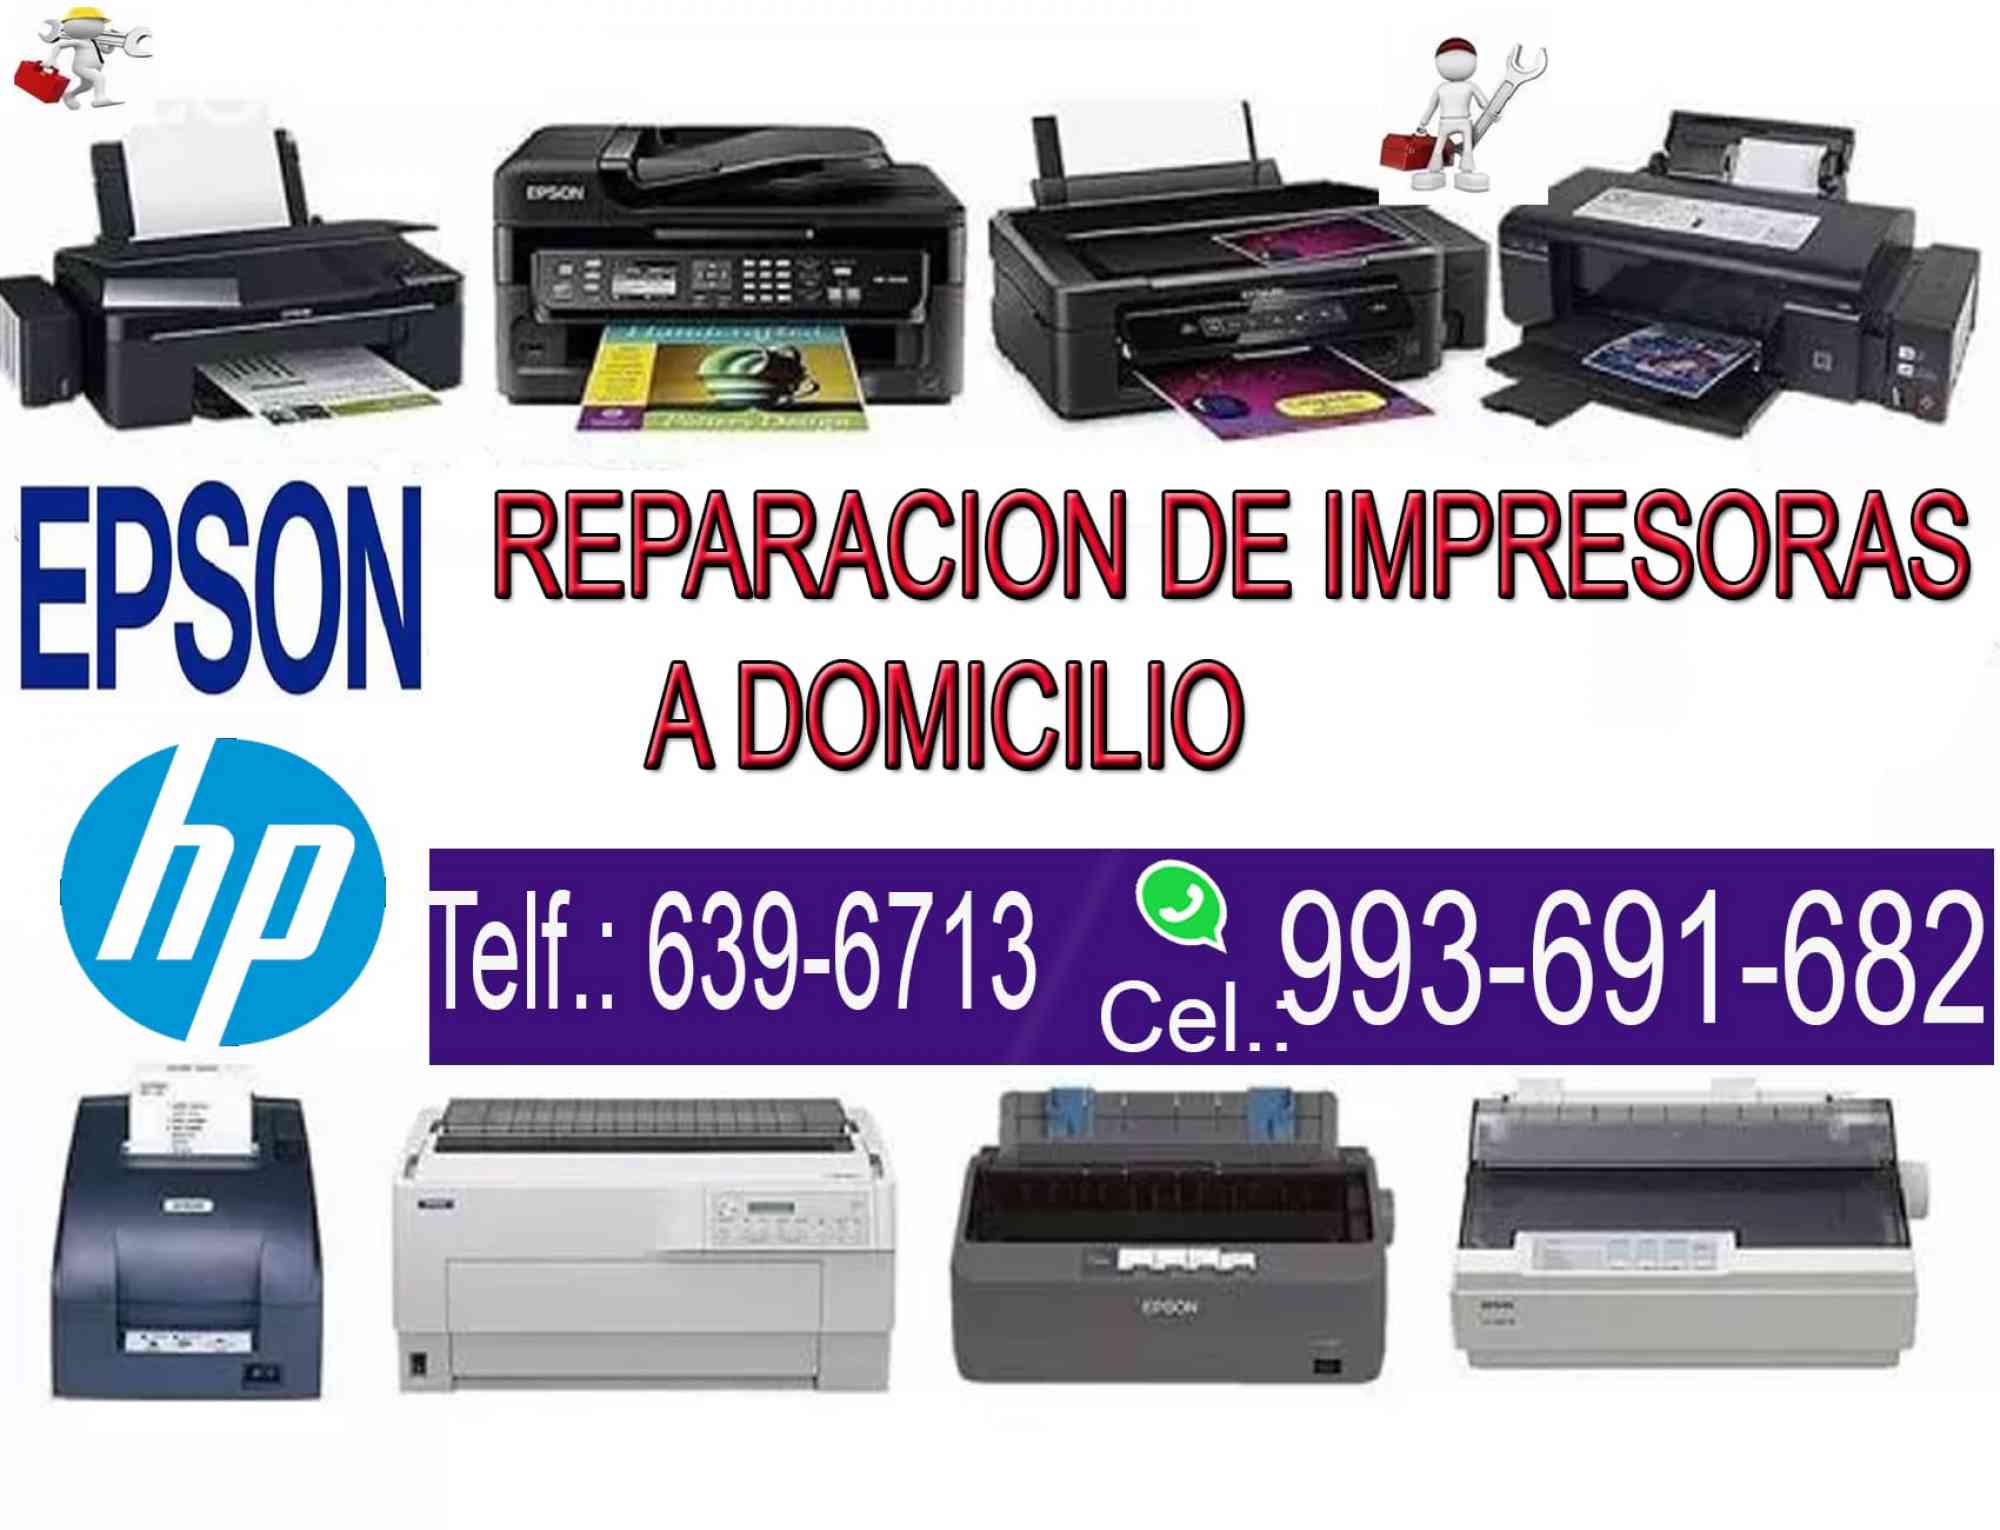 REPARACION IMPRESORAS HP Y EPSON en anuncio clasificado